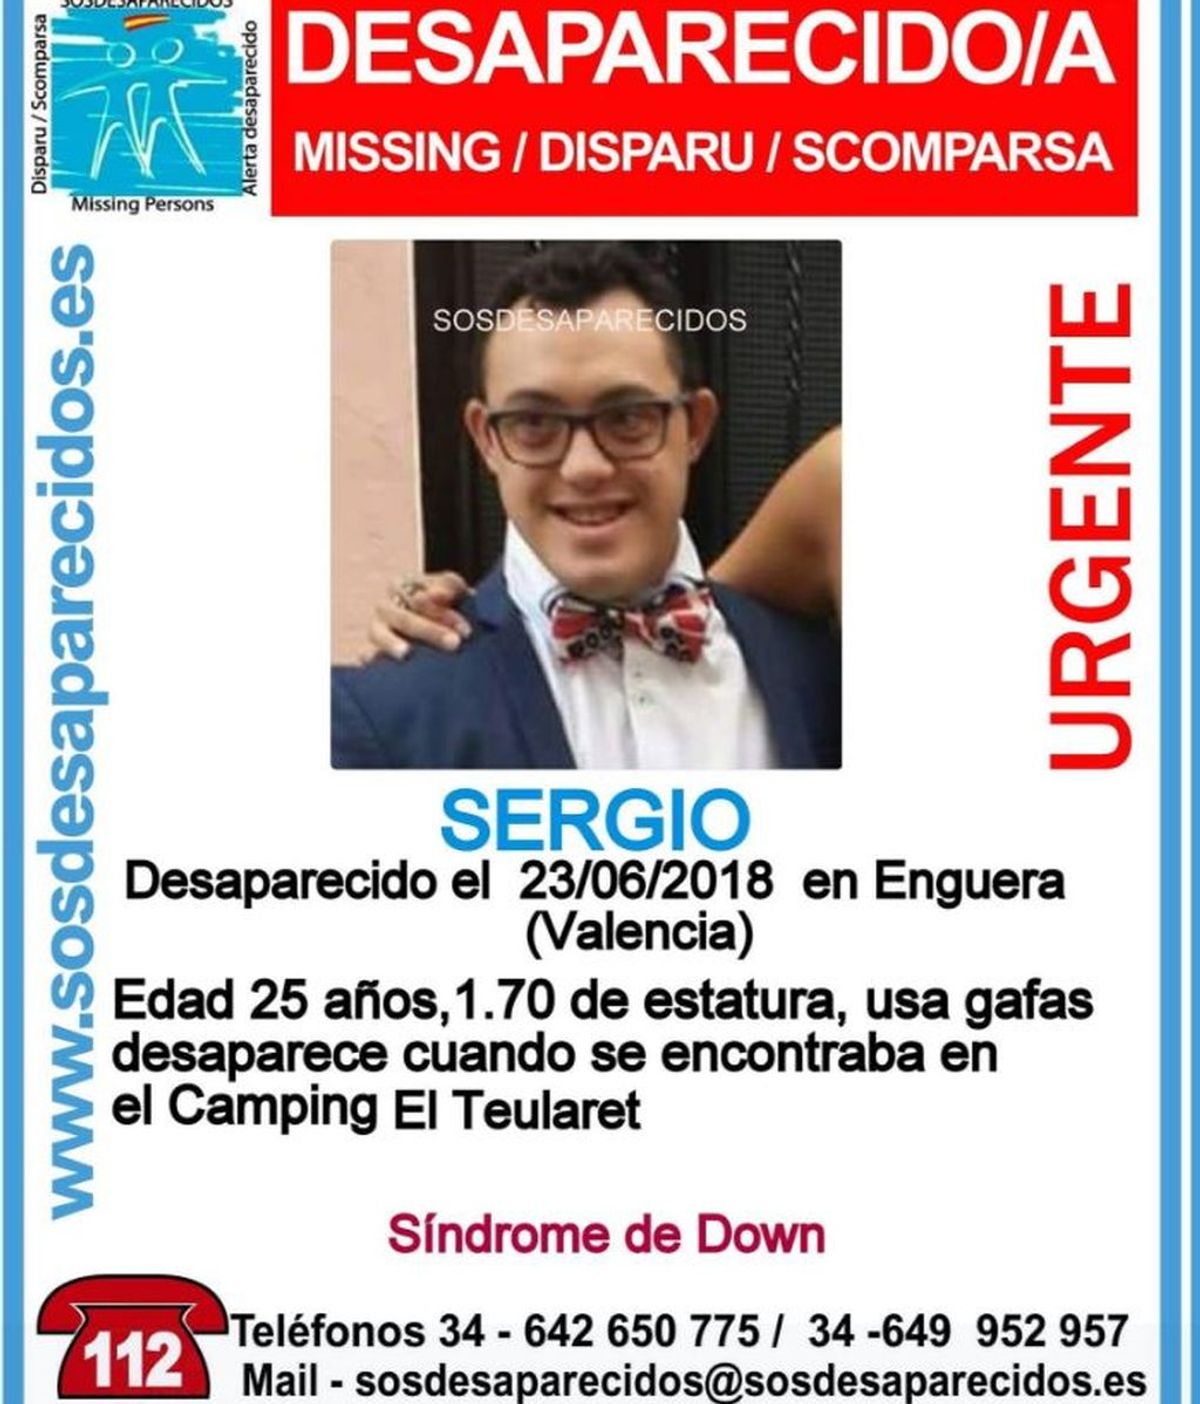 Cruz Roja se suma a la búsqueda del joven con síndrome de Down desaparecido en Valencia